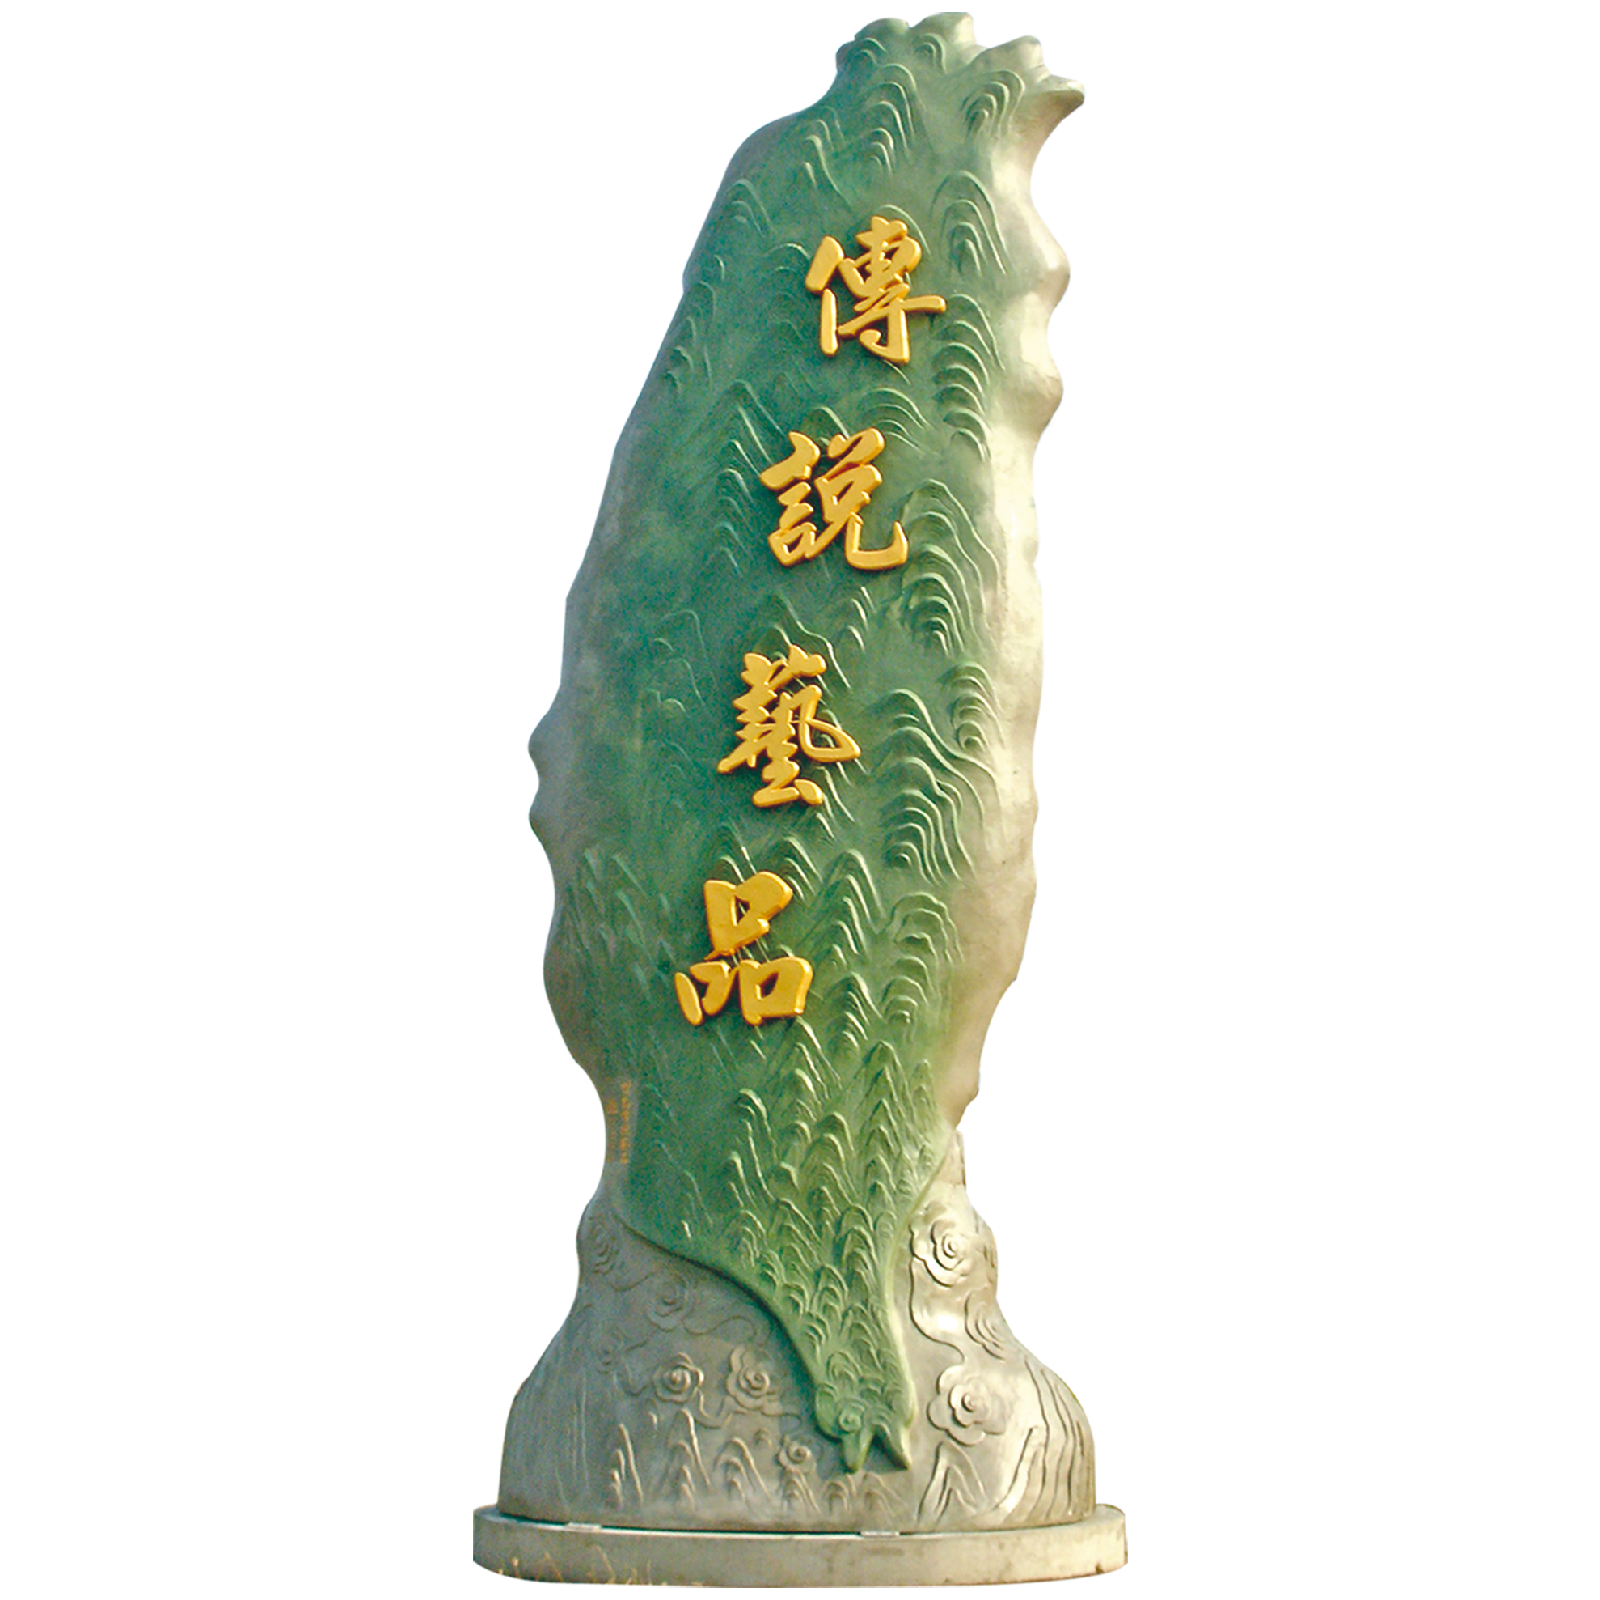 Large Taiwan Figurine 4.24 m